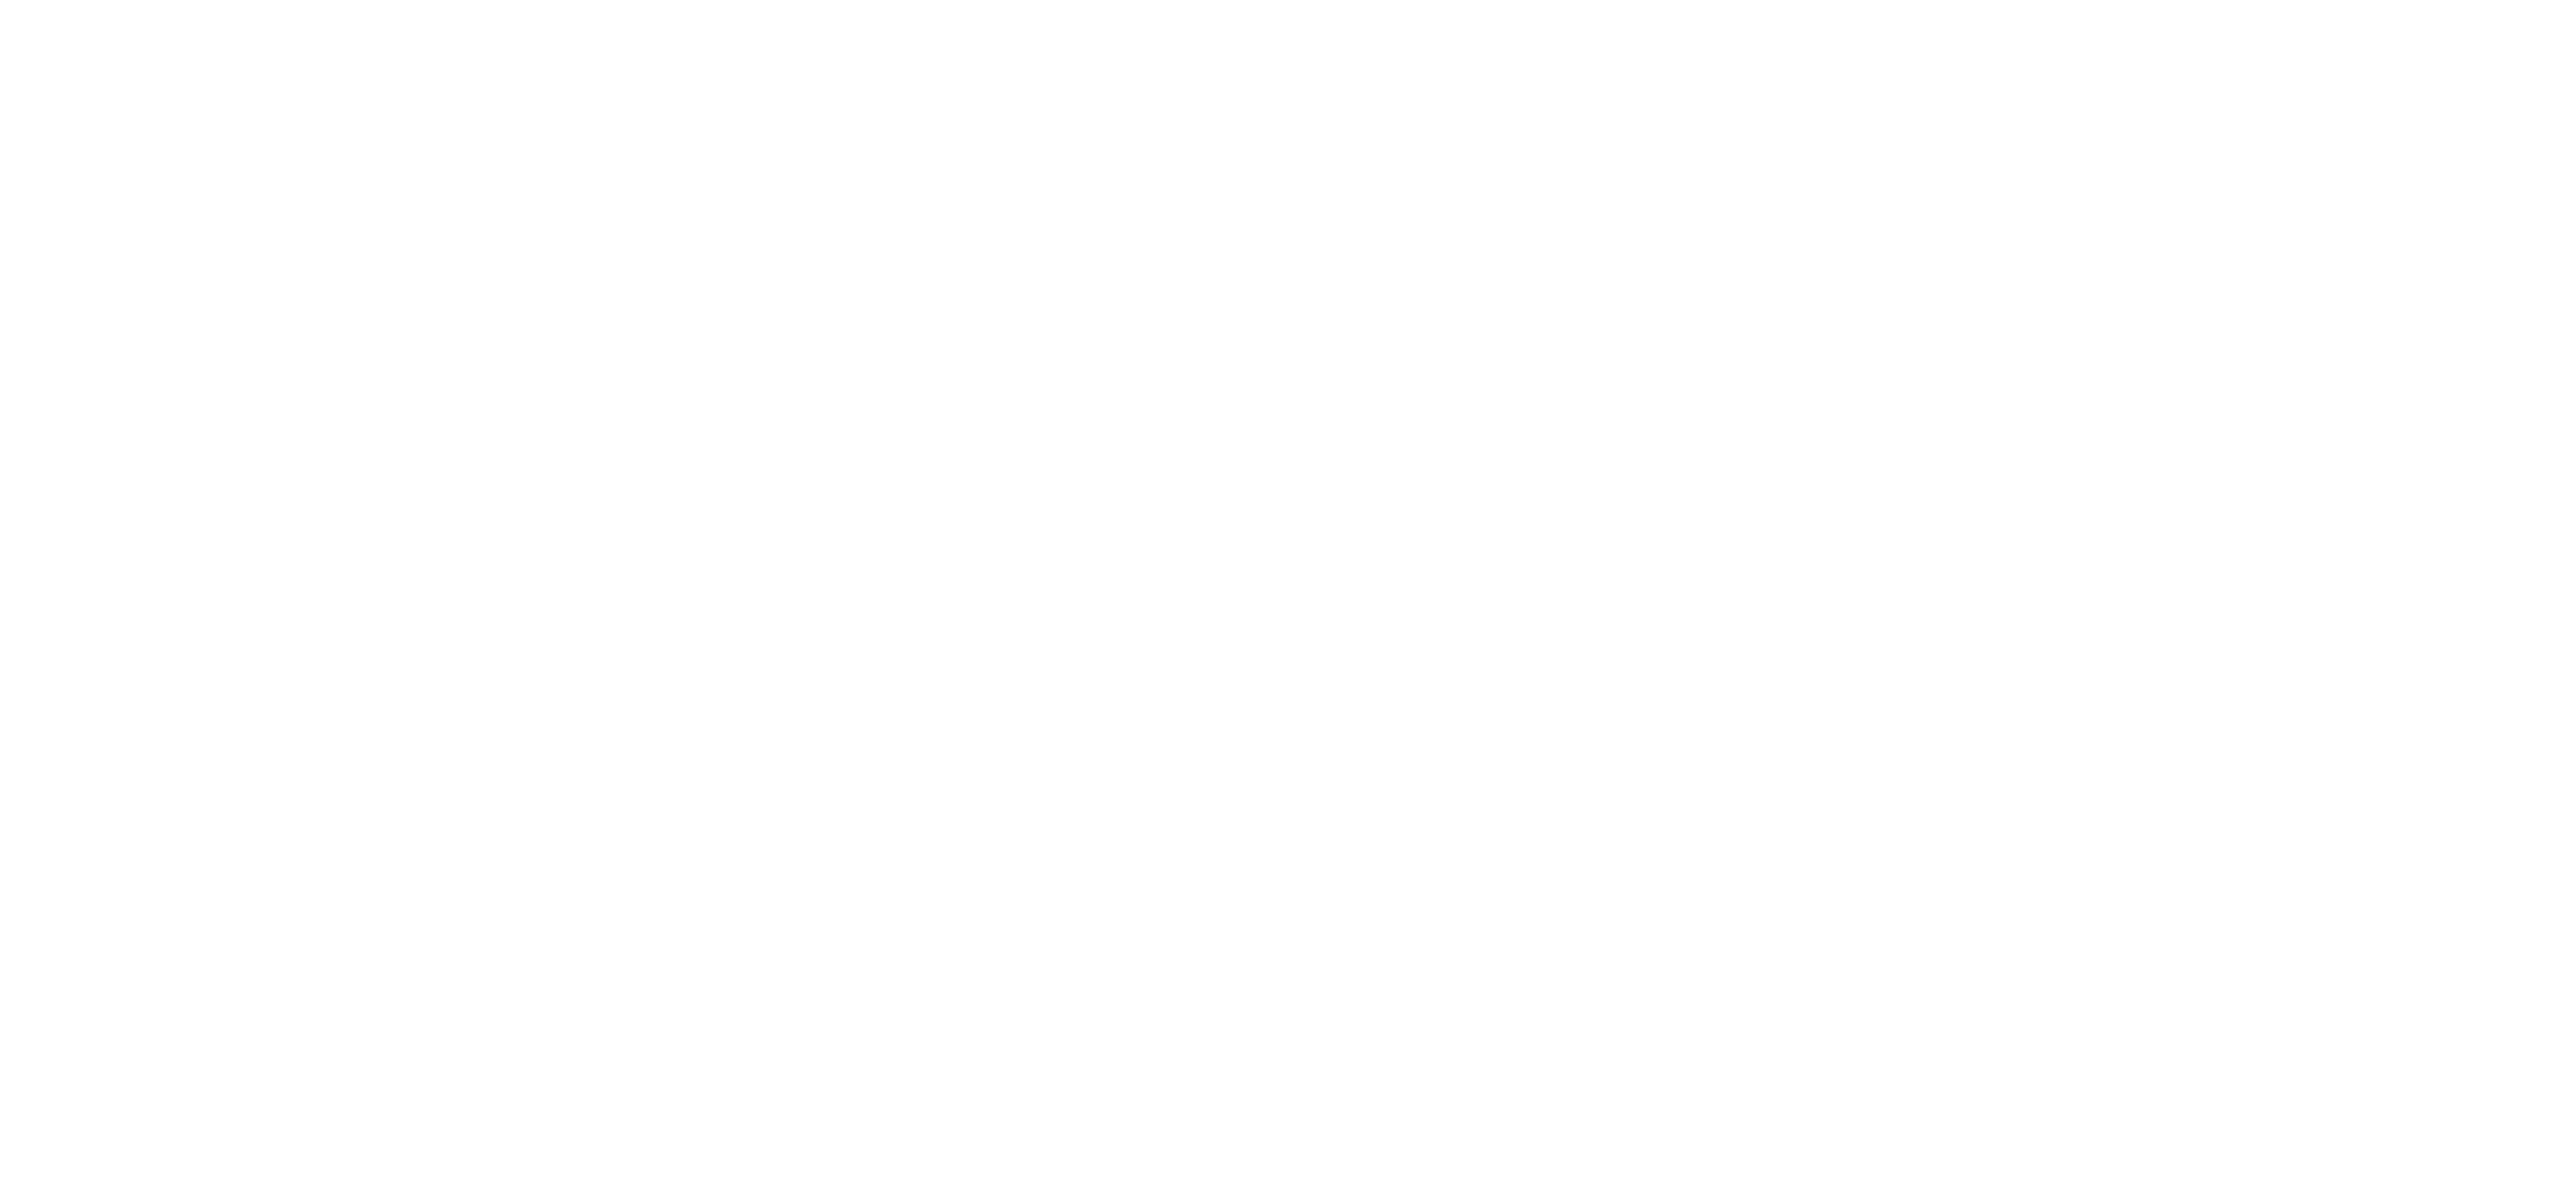 Logo do fapdf